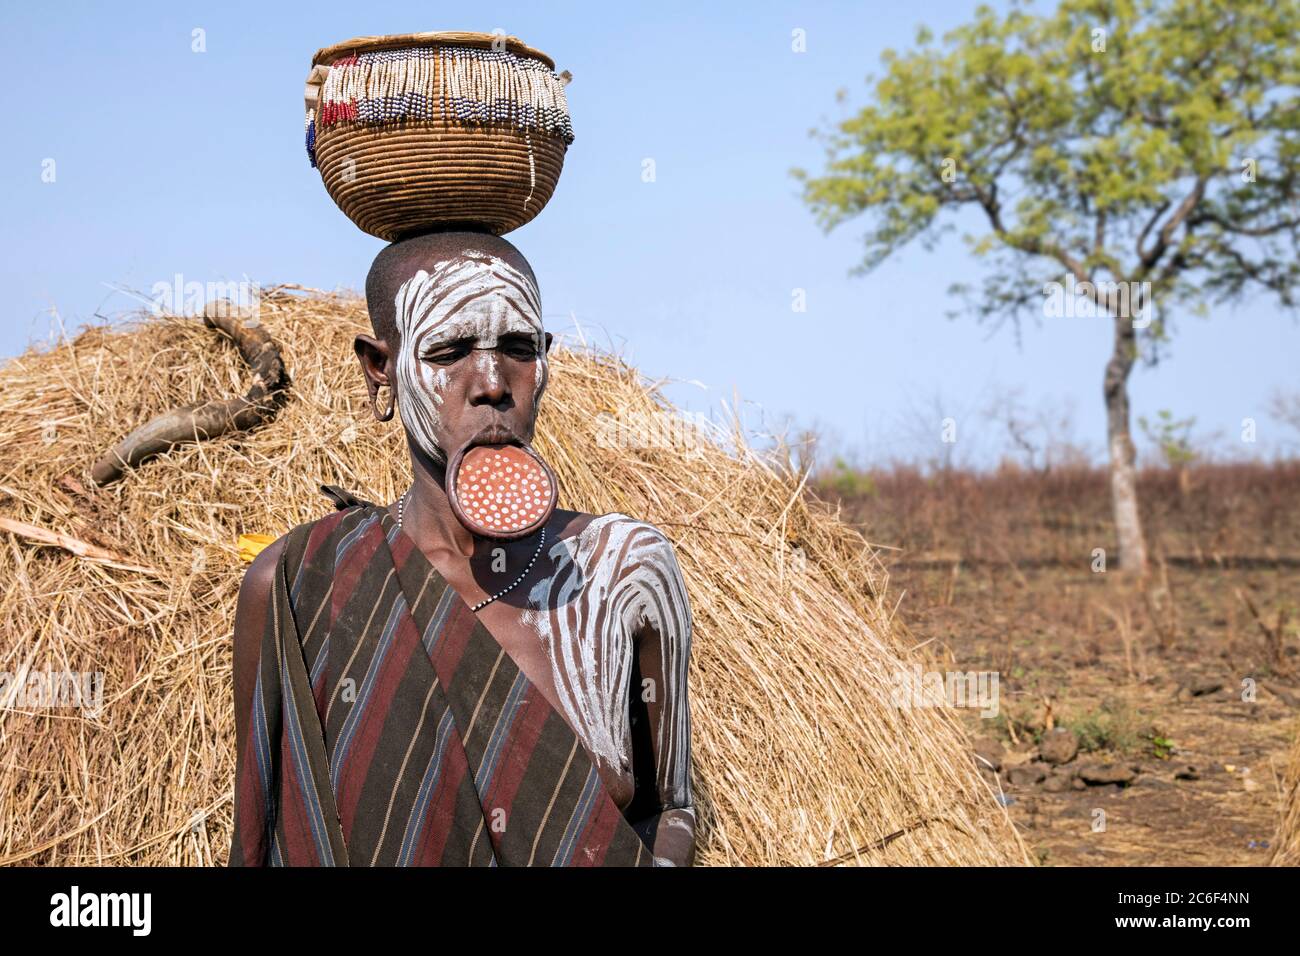 Femme peinte de la tribu Mursi portant une plaque à lèvres et un panier sur sa tête dans le parc national de Mago, Jinka, zone de Debub Omo, sud de l'Éthiopie, Afrique Banque D'Images